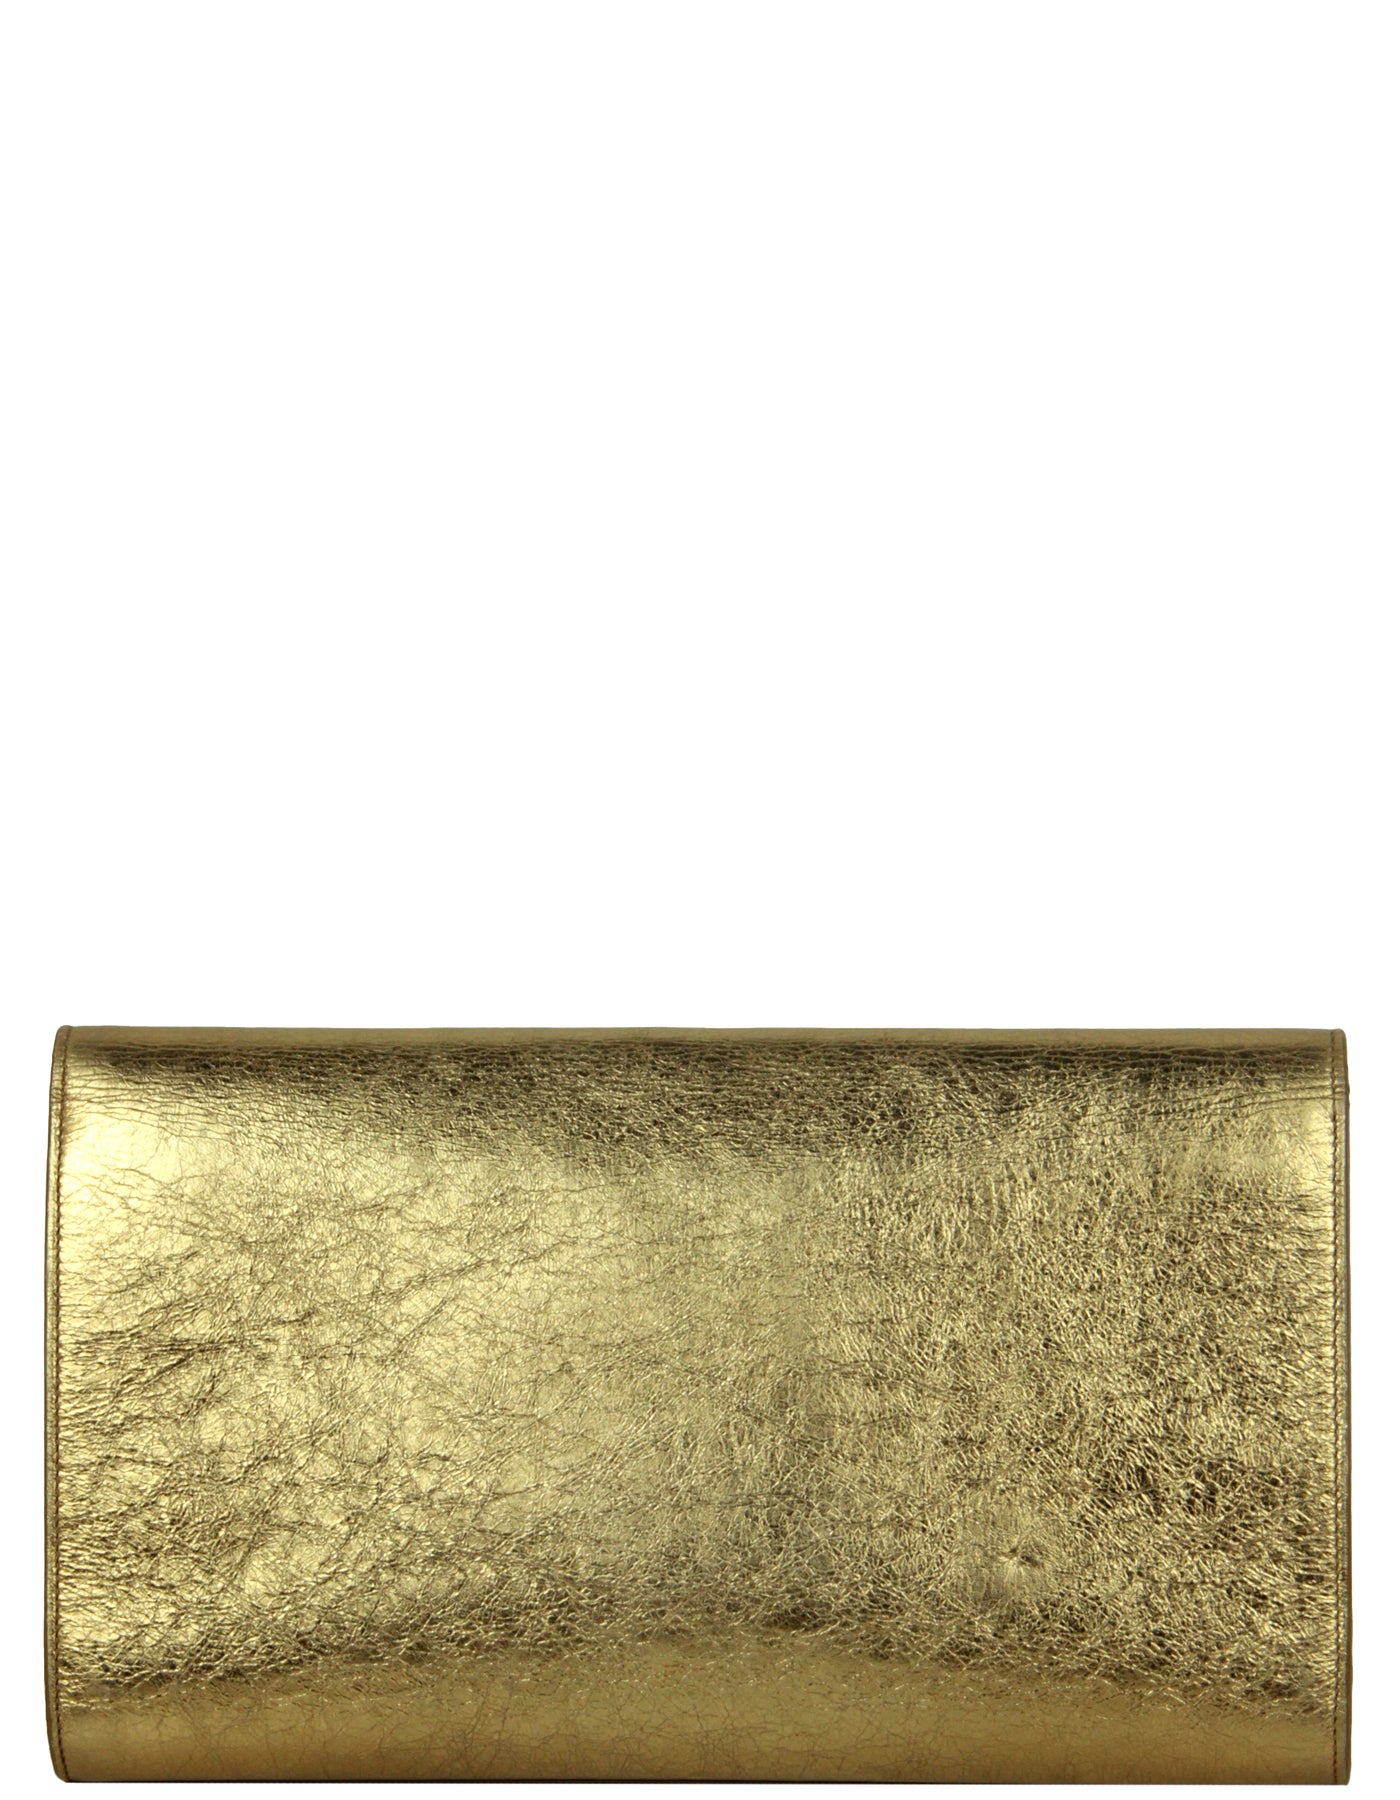 Yves Saint Laurent YSL Gold Large Belle De Jour Clutch Bag – ASC